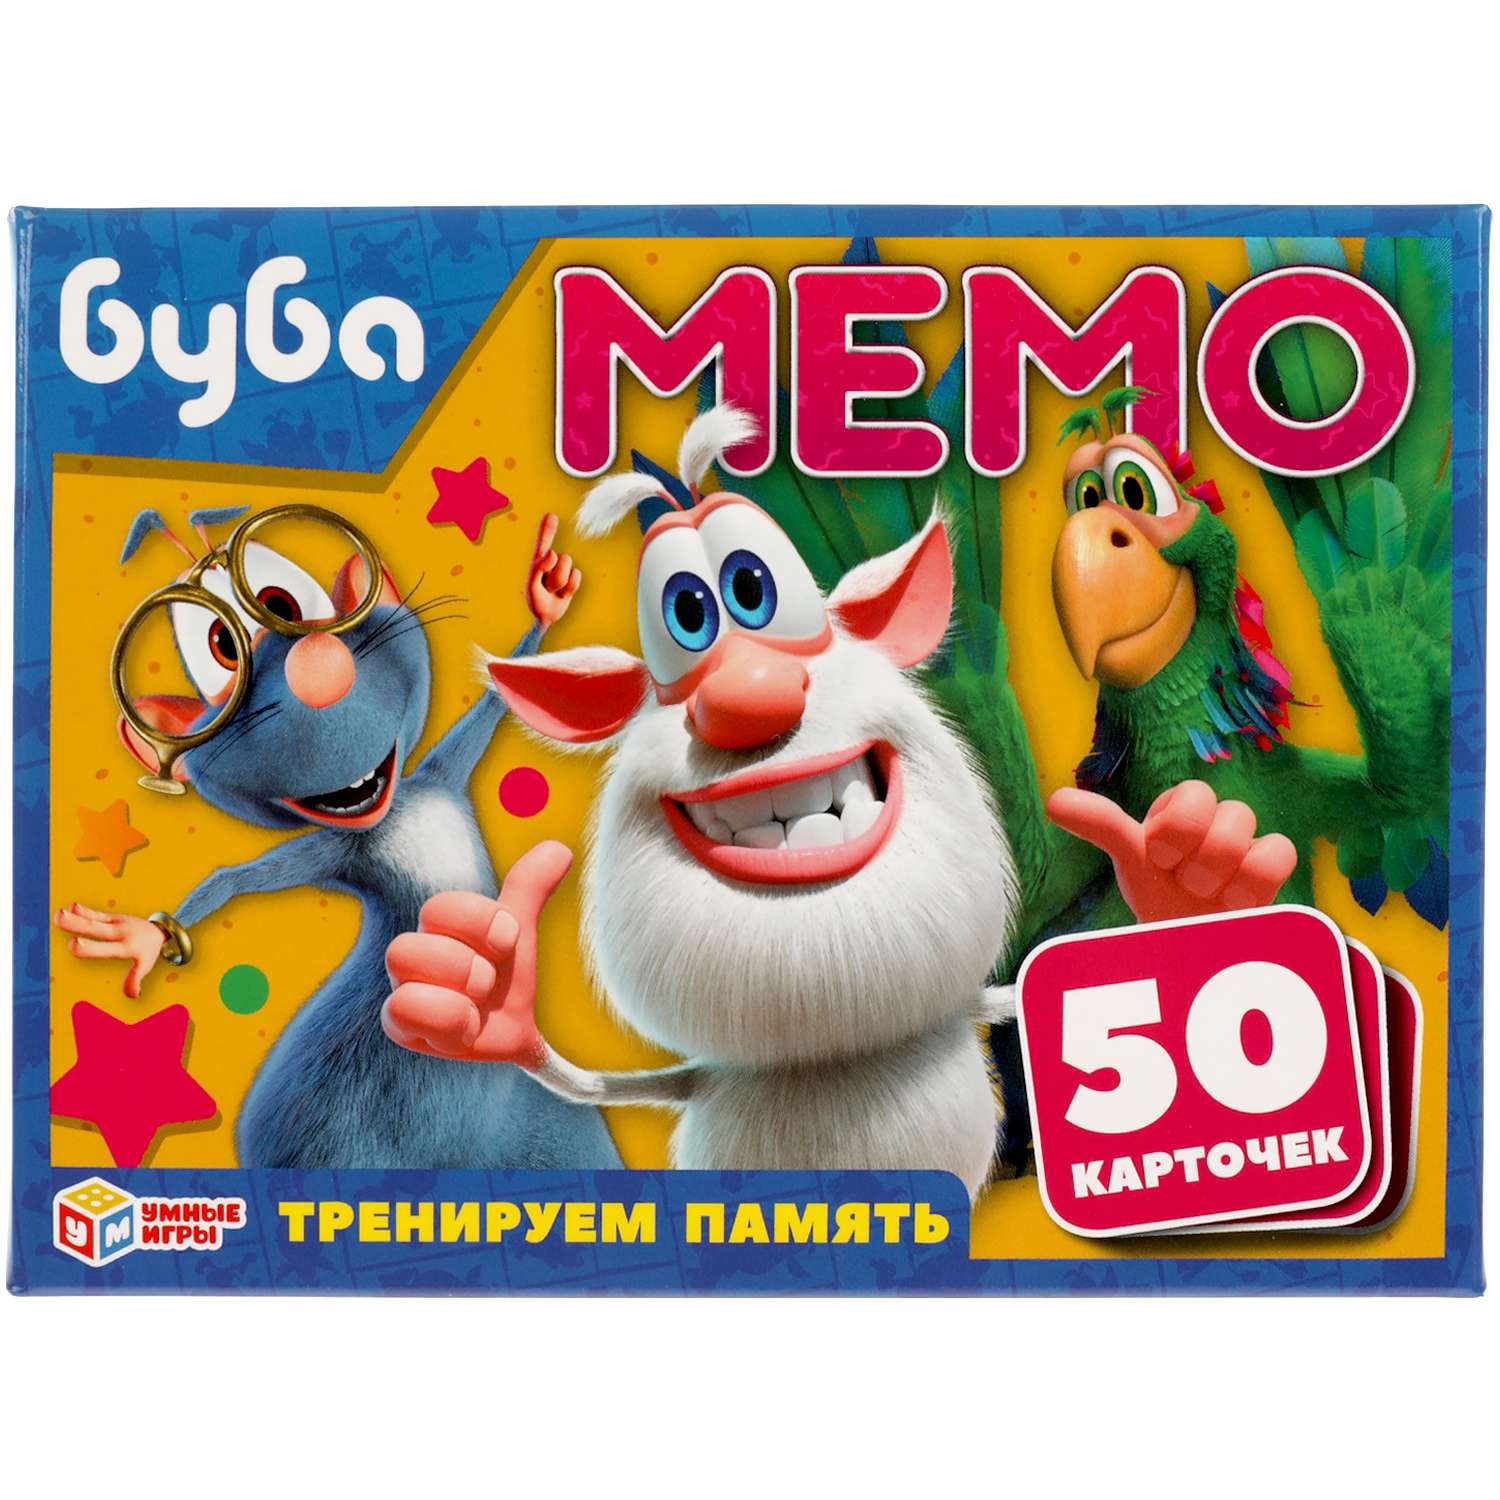 Карточная игра Мемо Умные Игры Буба 50 карточек Тренируем память - фото 1